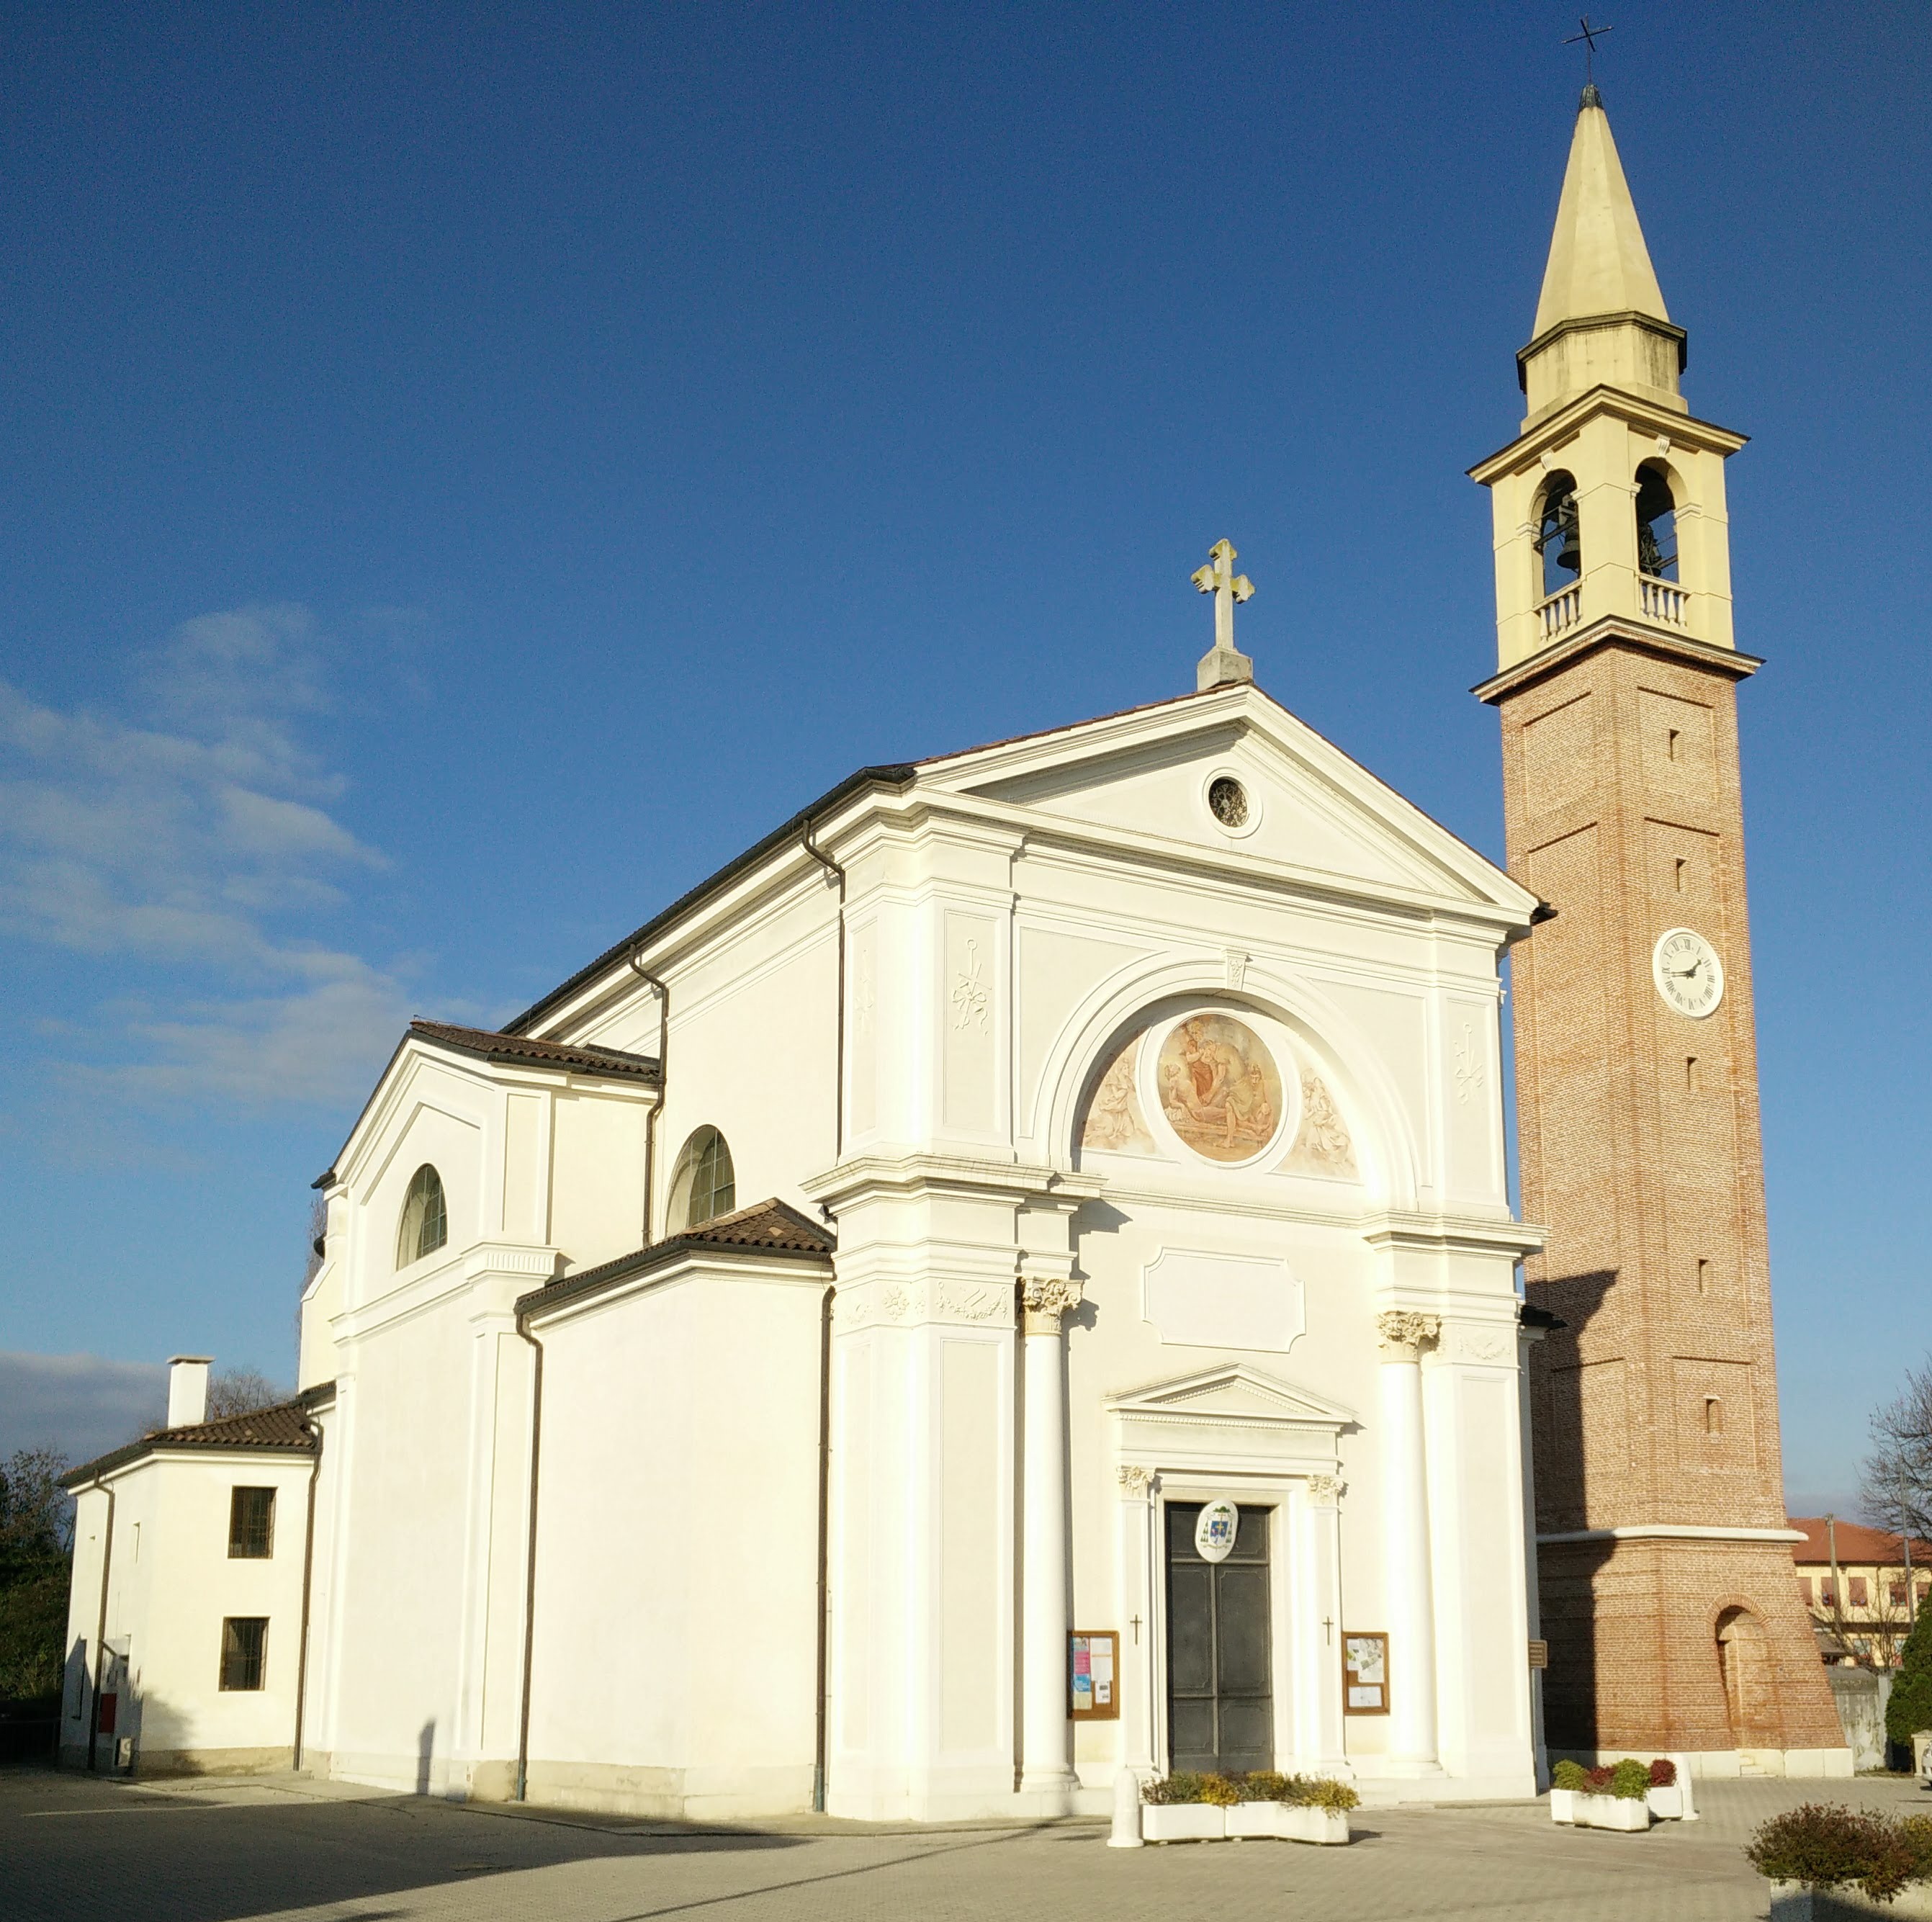 GC8GFBH Chiesa di San Lorenzo - Poggiana di Riese Pio X (Traditional Cache)  in Veneto, Italy created by dvdq8